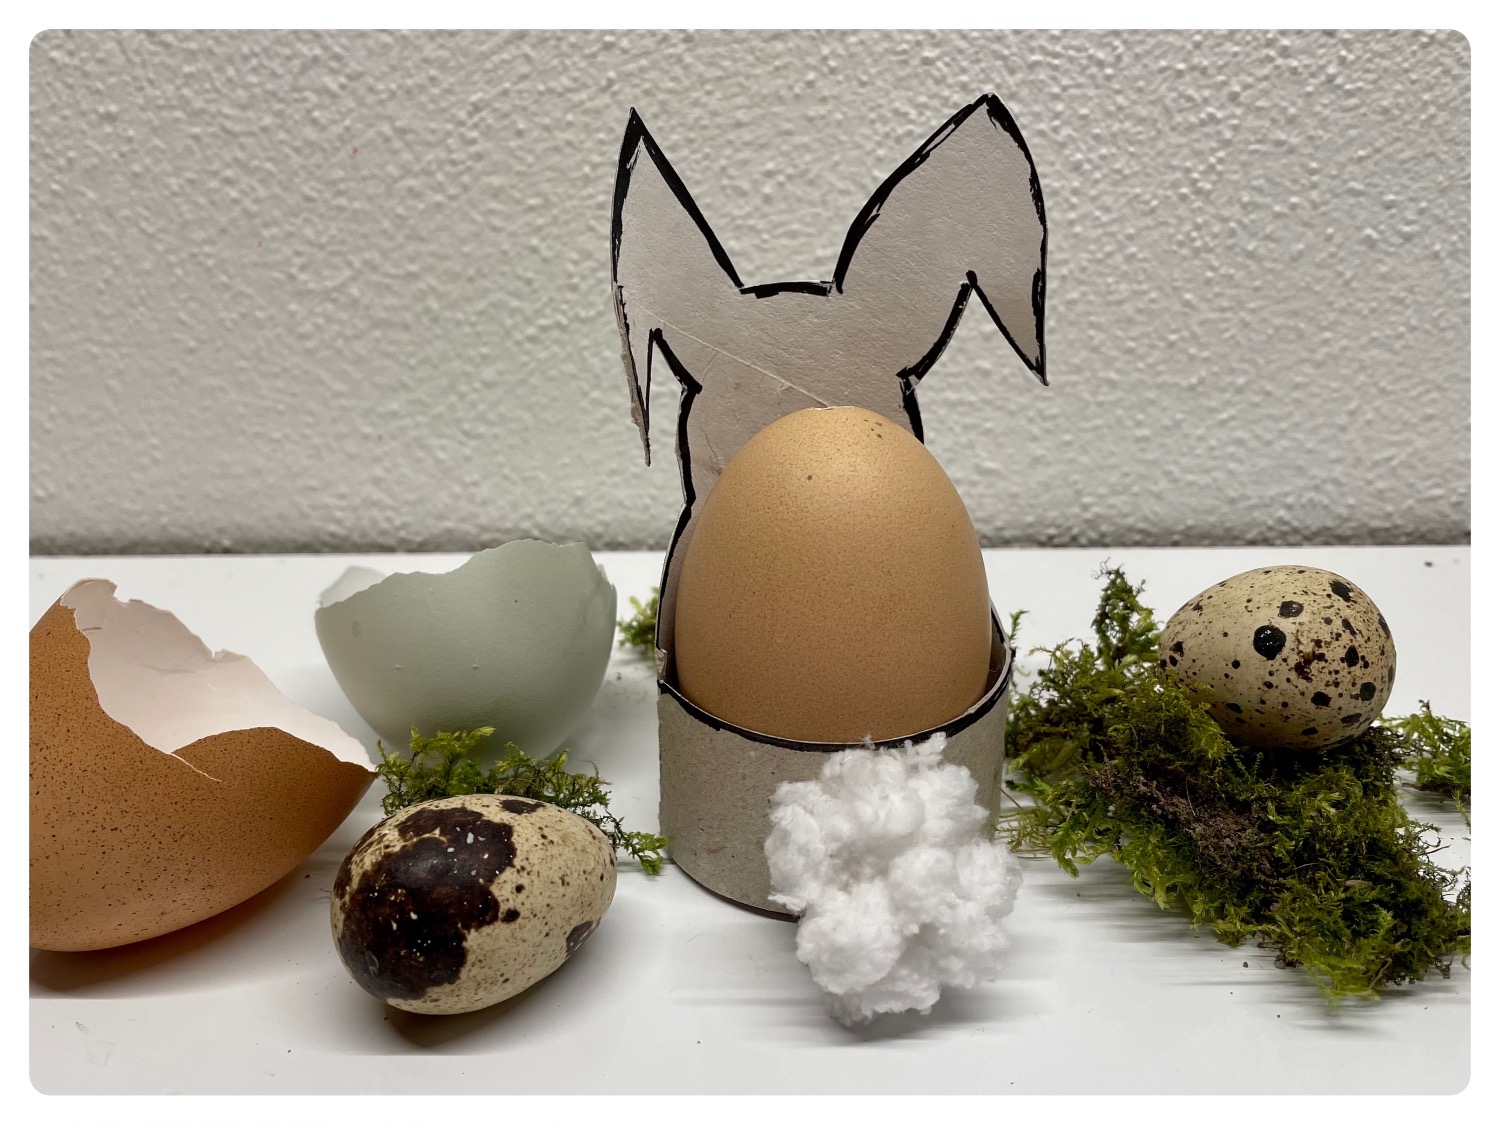 Titelbild zur Idee für die Beschäftigung mit Kindern '(1056) Hasen-Eierbecher aus Papprolle'